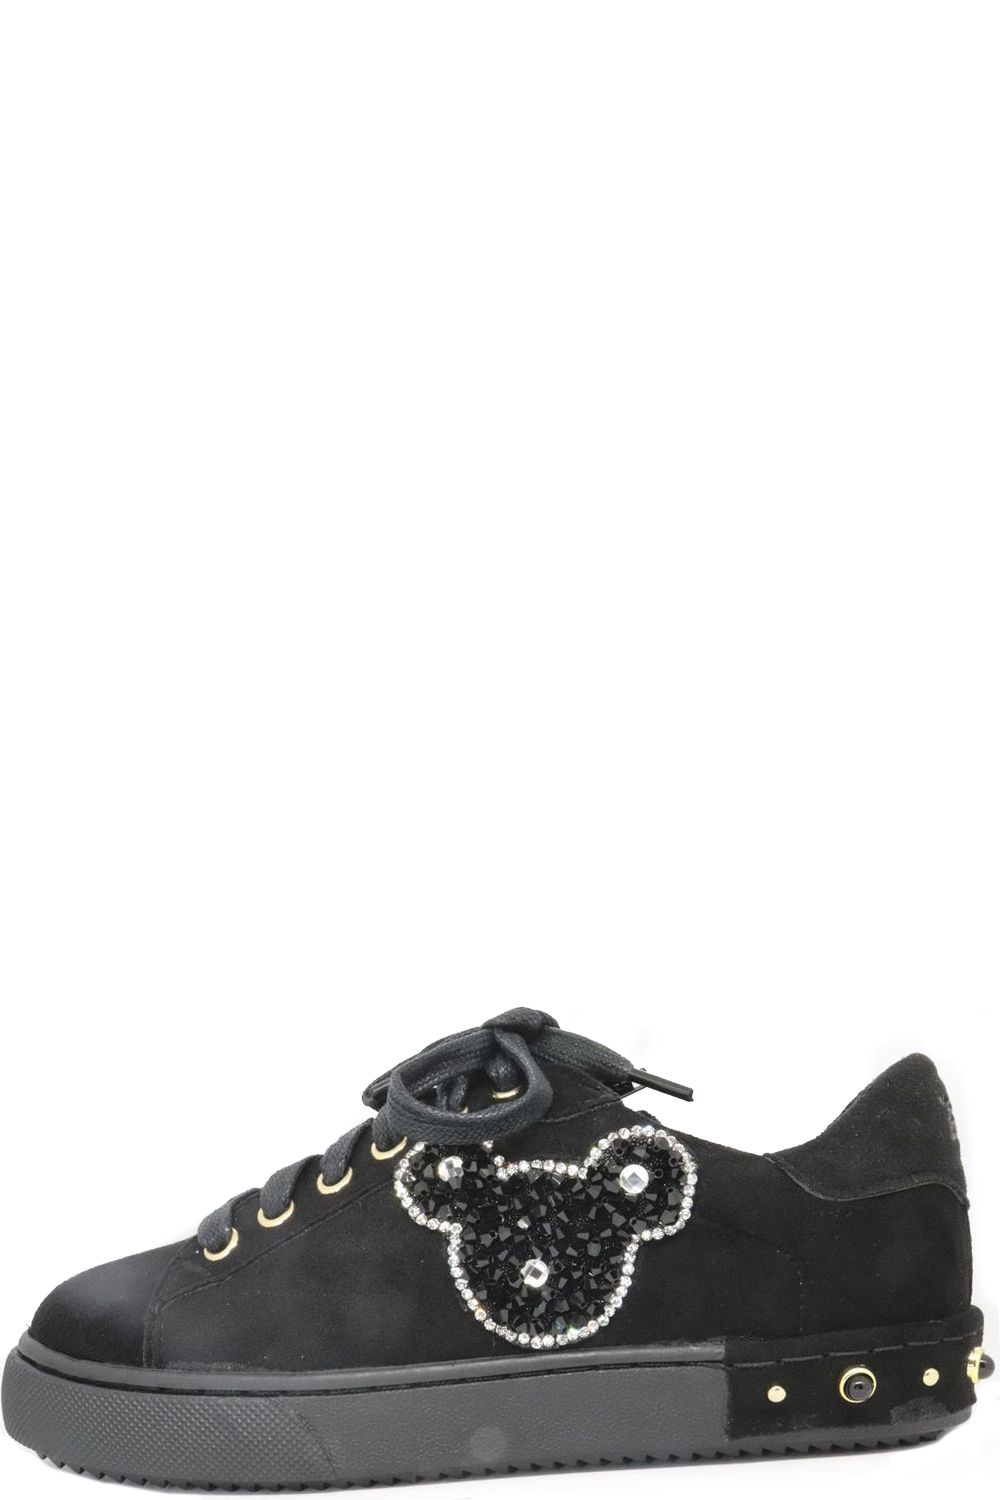 Ботинки Holala, размер 37, цвет черный HS0032S - фото 1